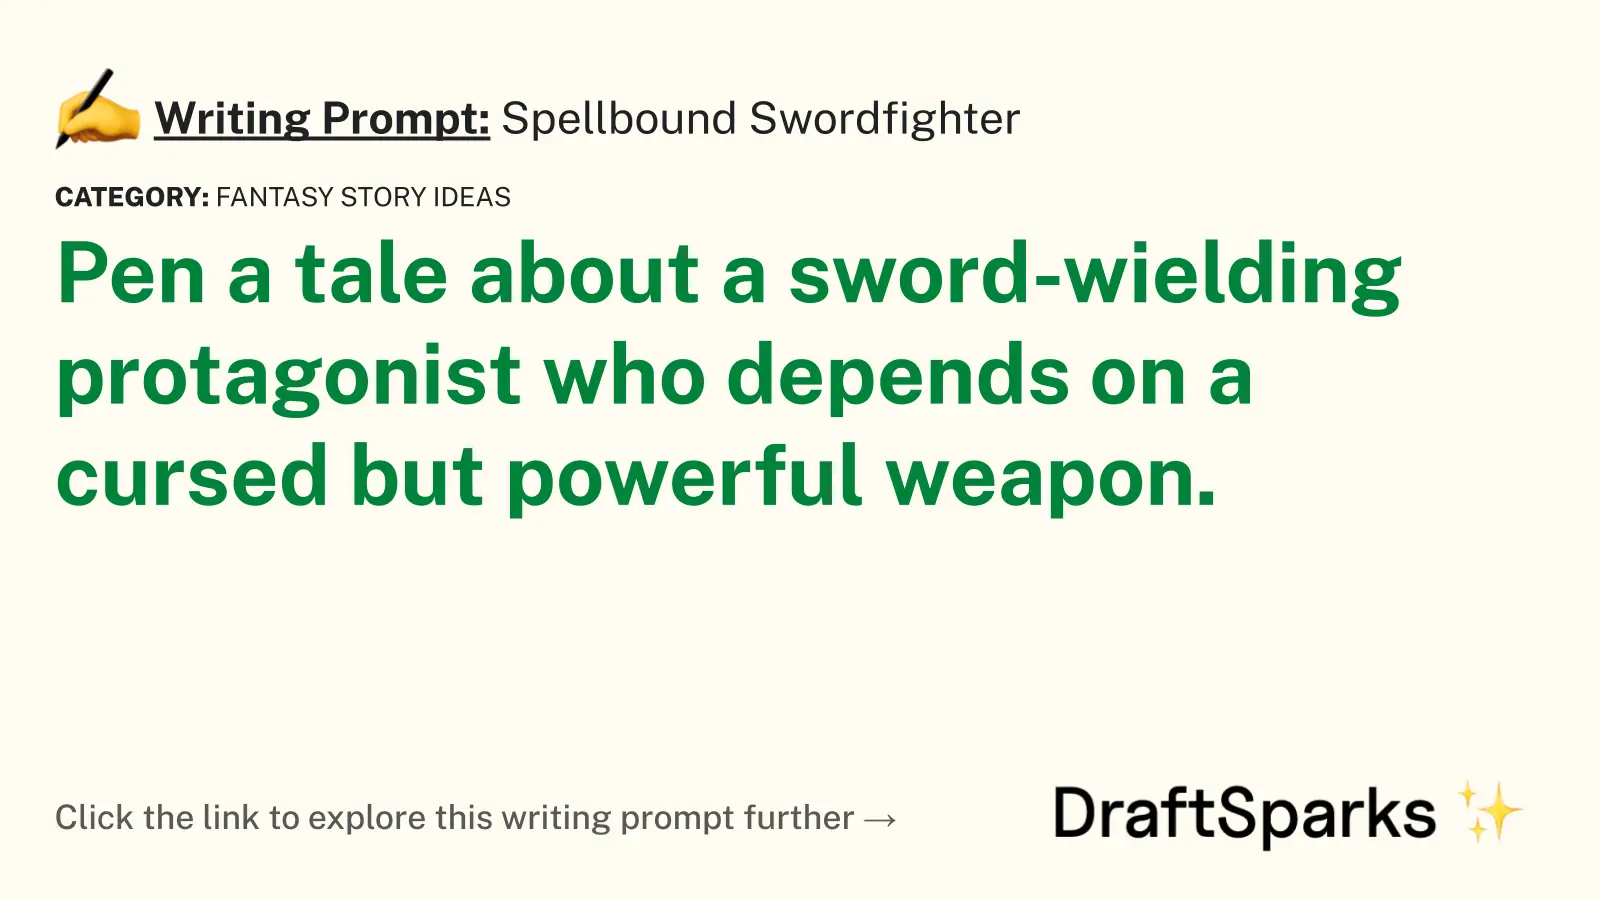 Spellbound Swordfighter